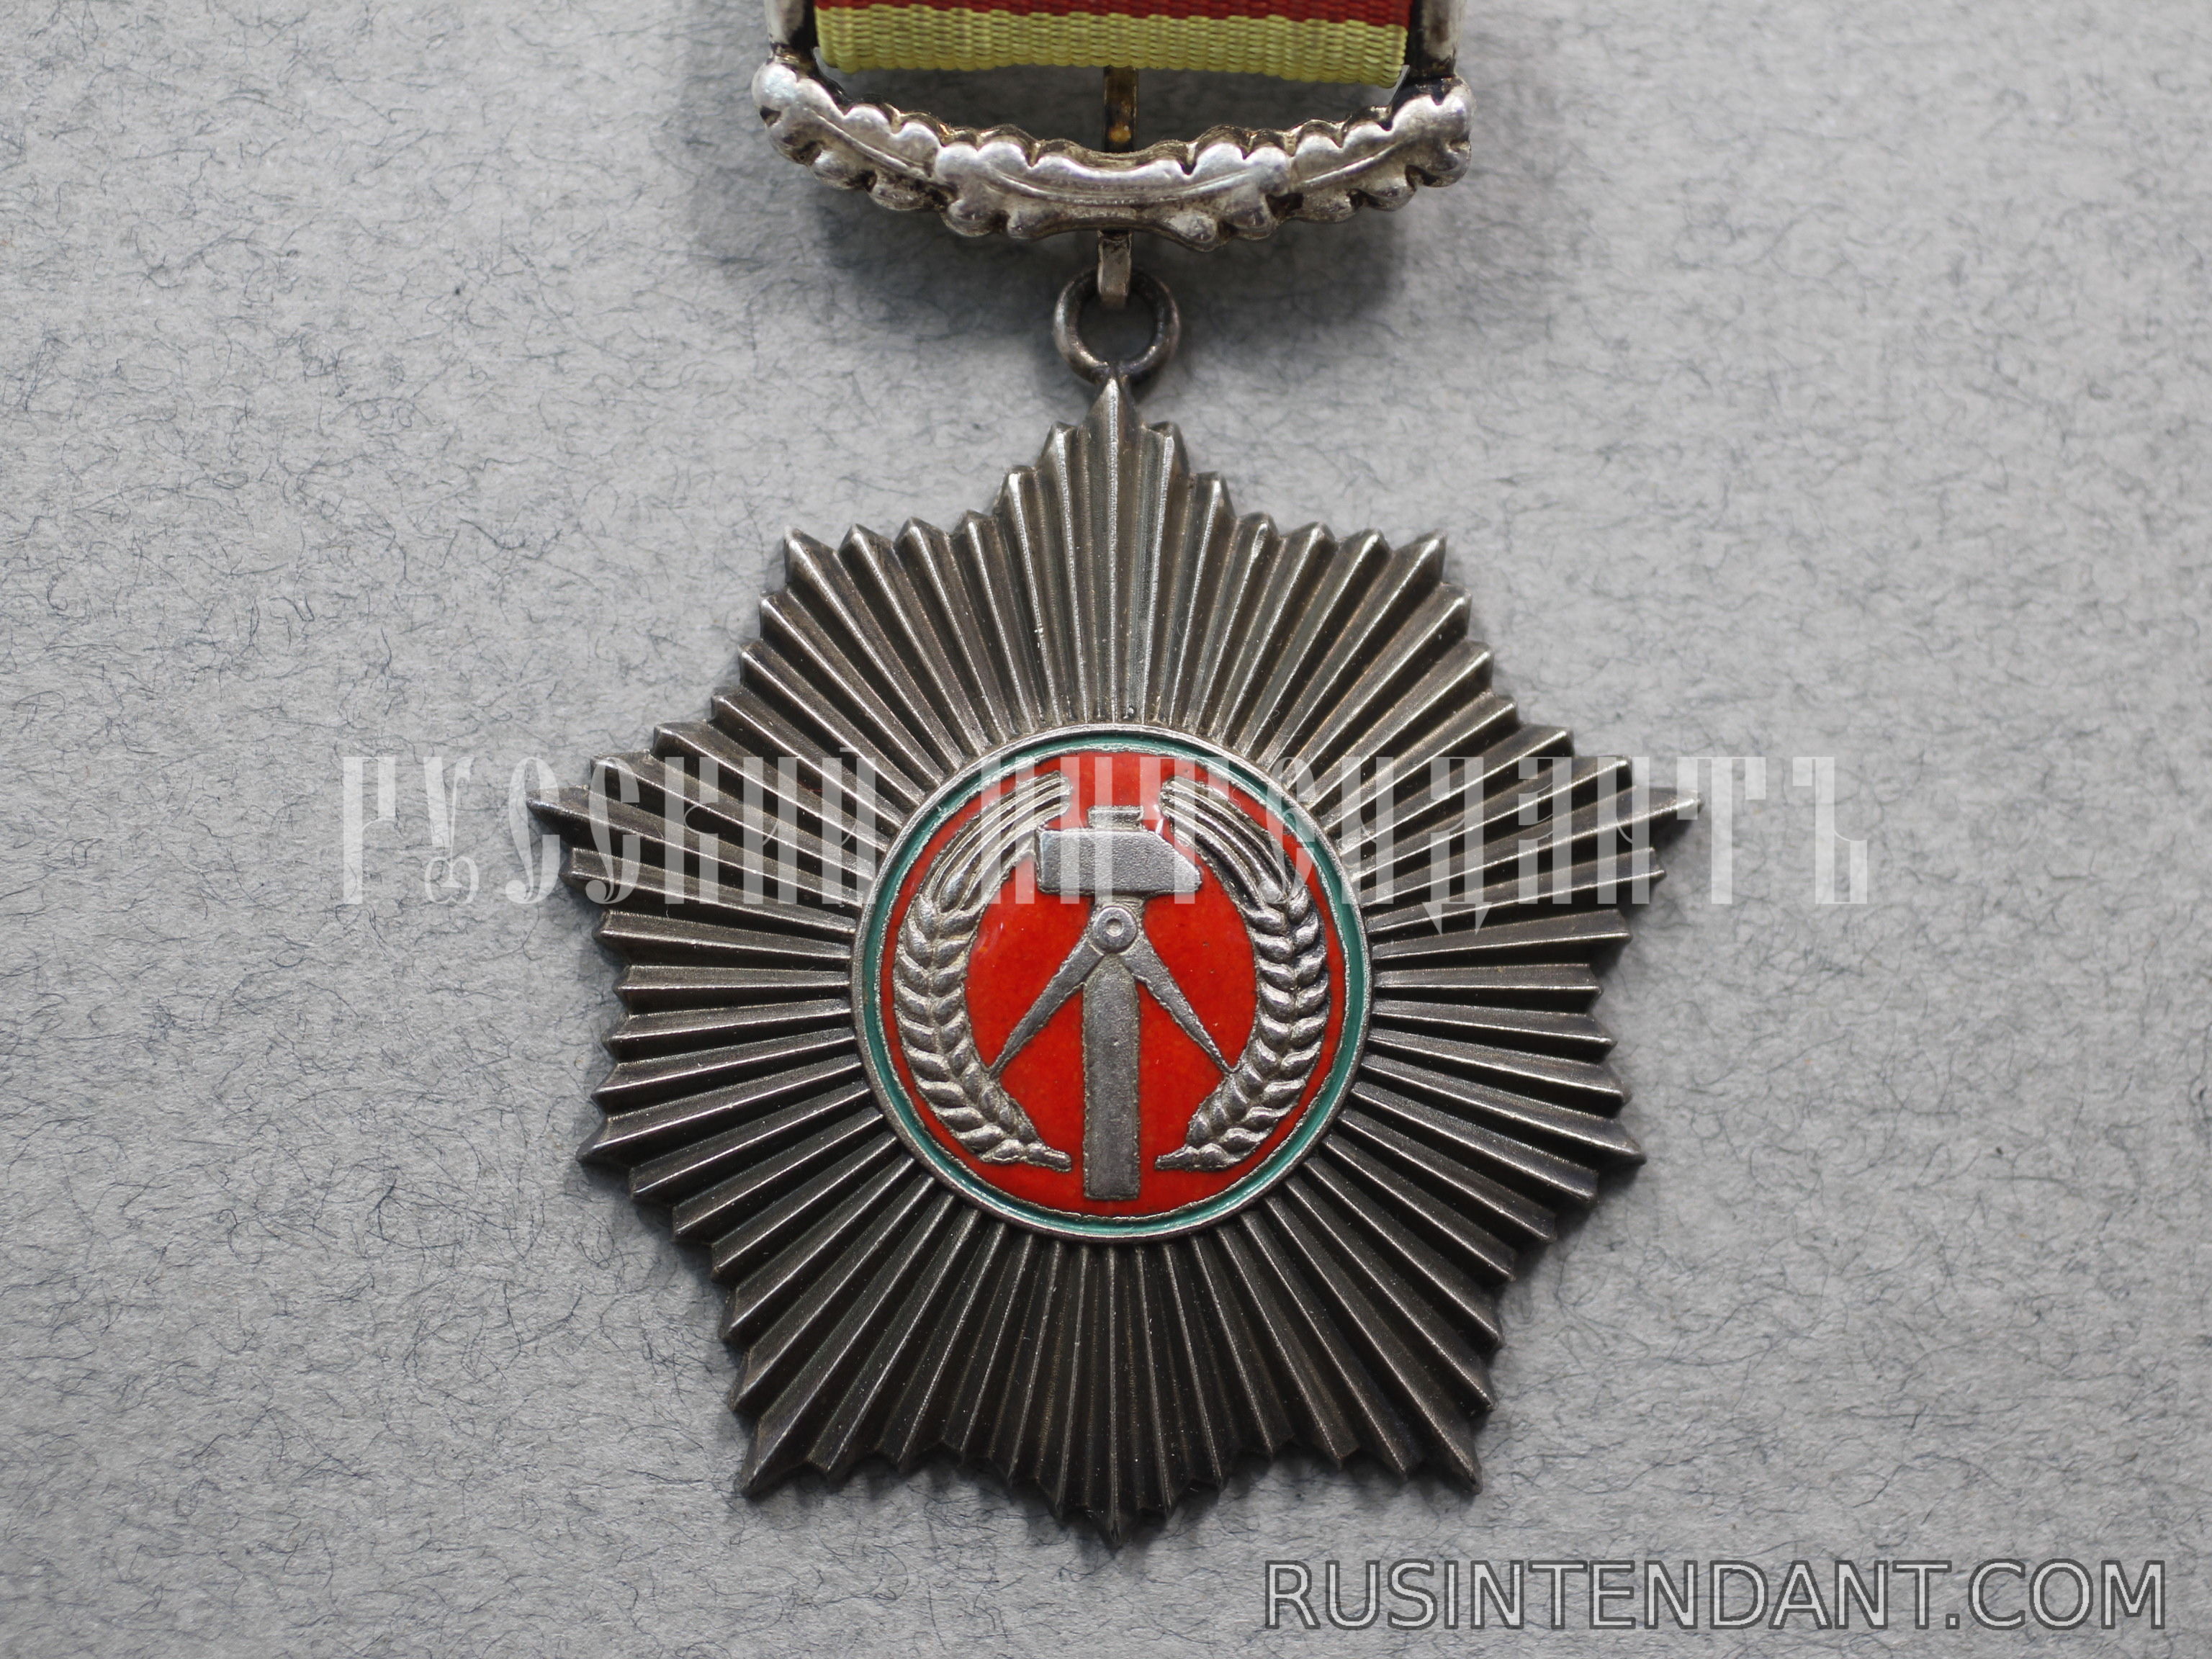 Фото 2: Орден За заслуги перед Отечеством в серебре 